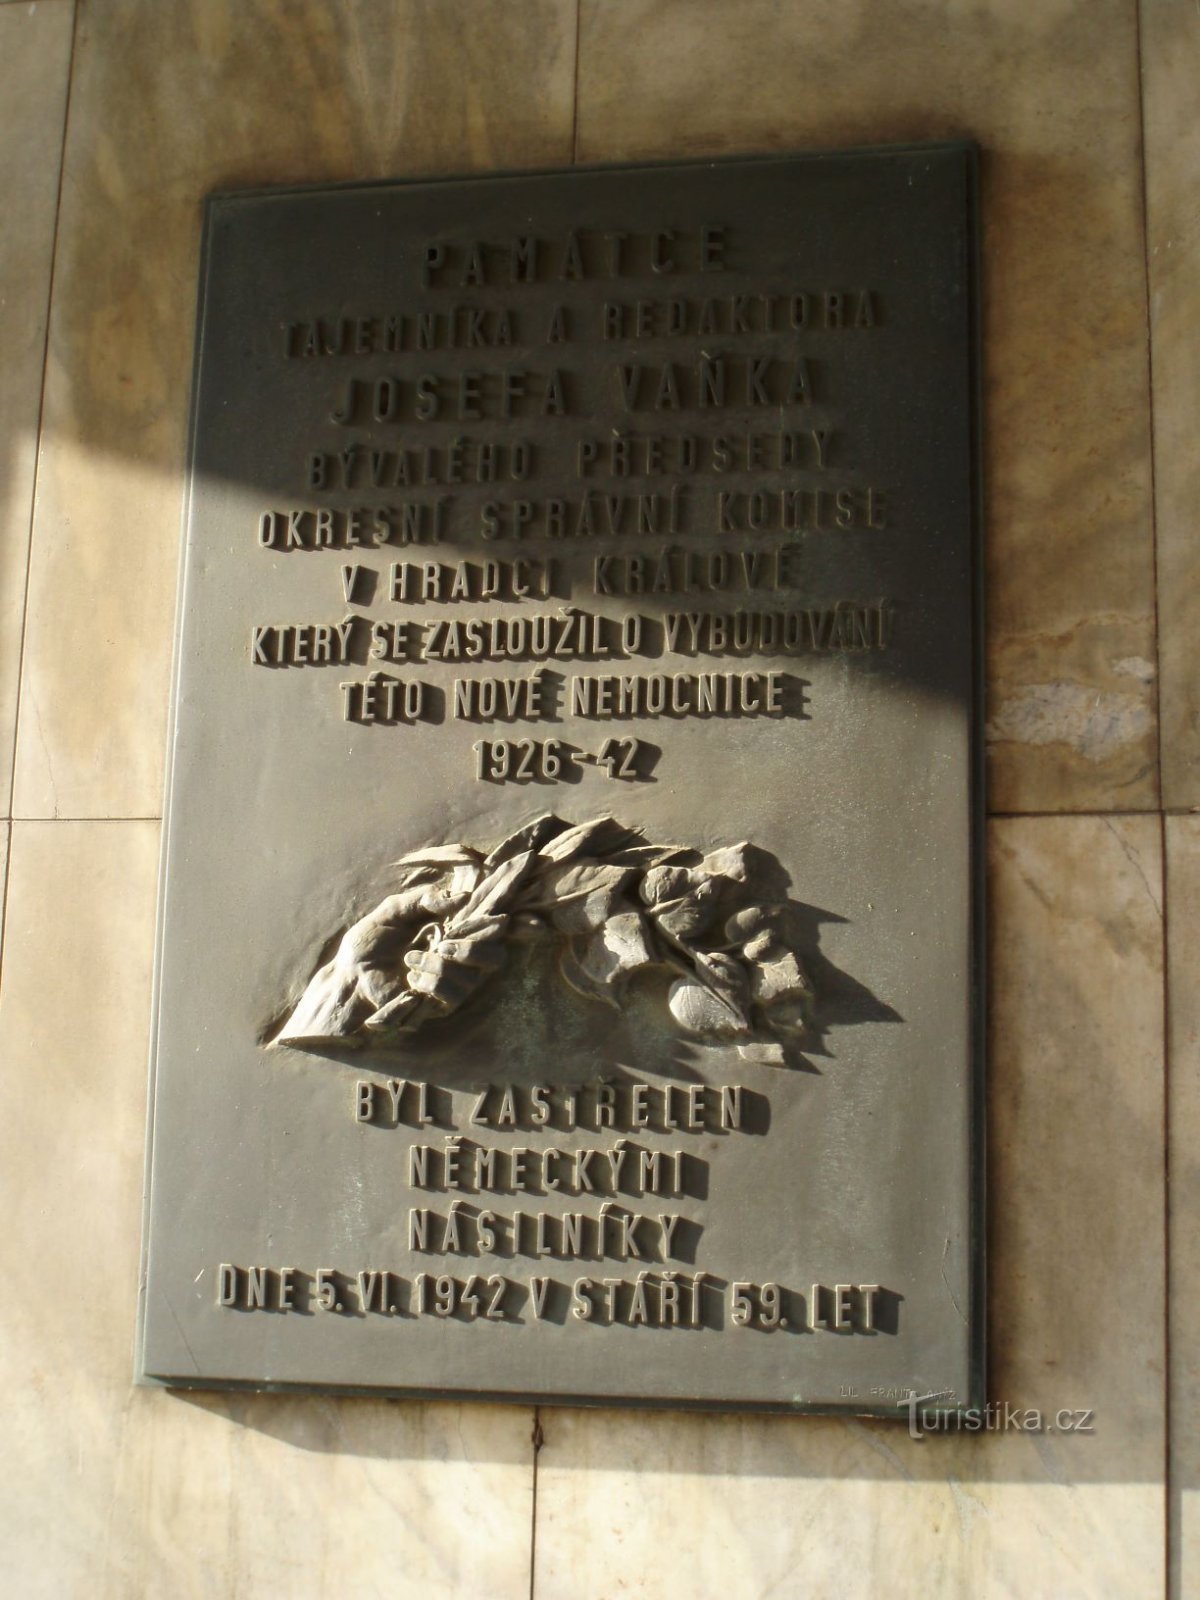 Muistolaatat Hradec Královén yliopistollisessa sairaalassa (29.11.2011. marraskuuta XNUMX)